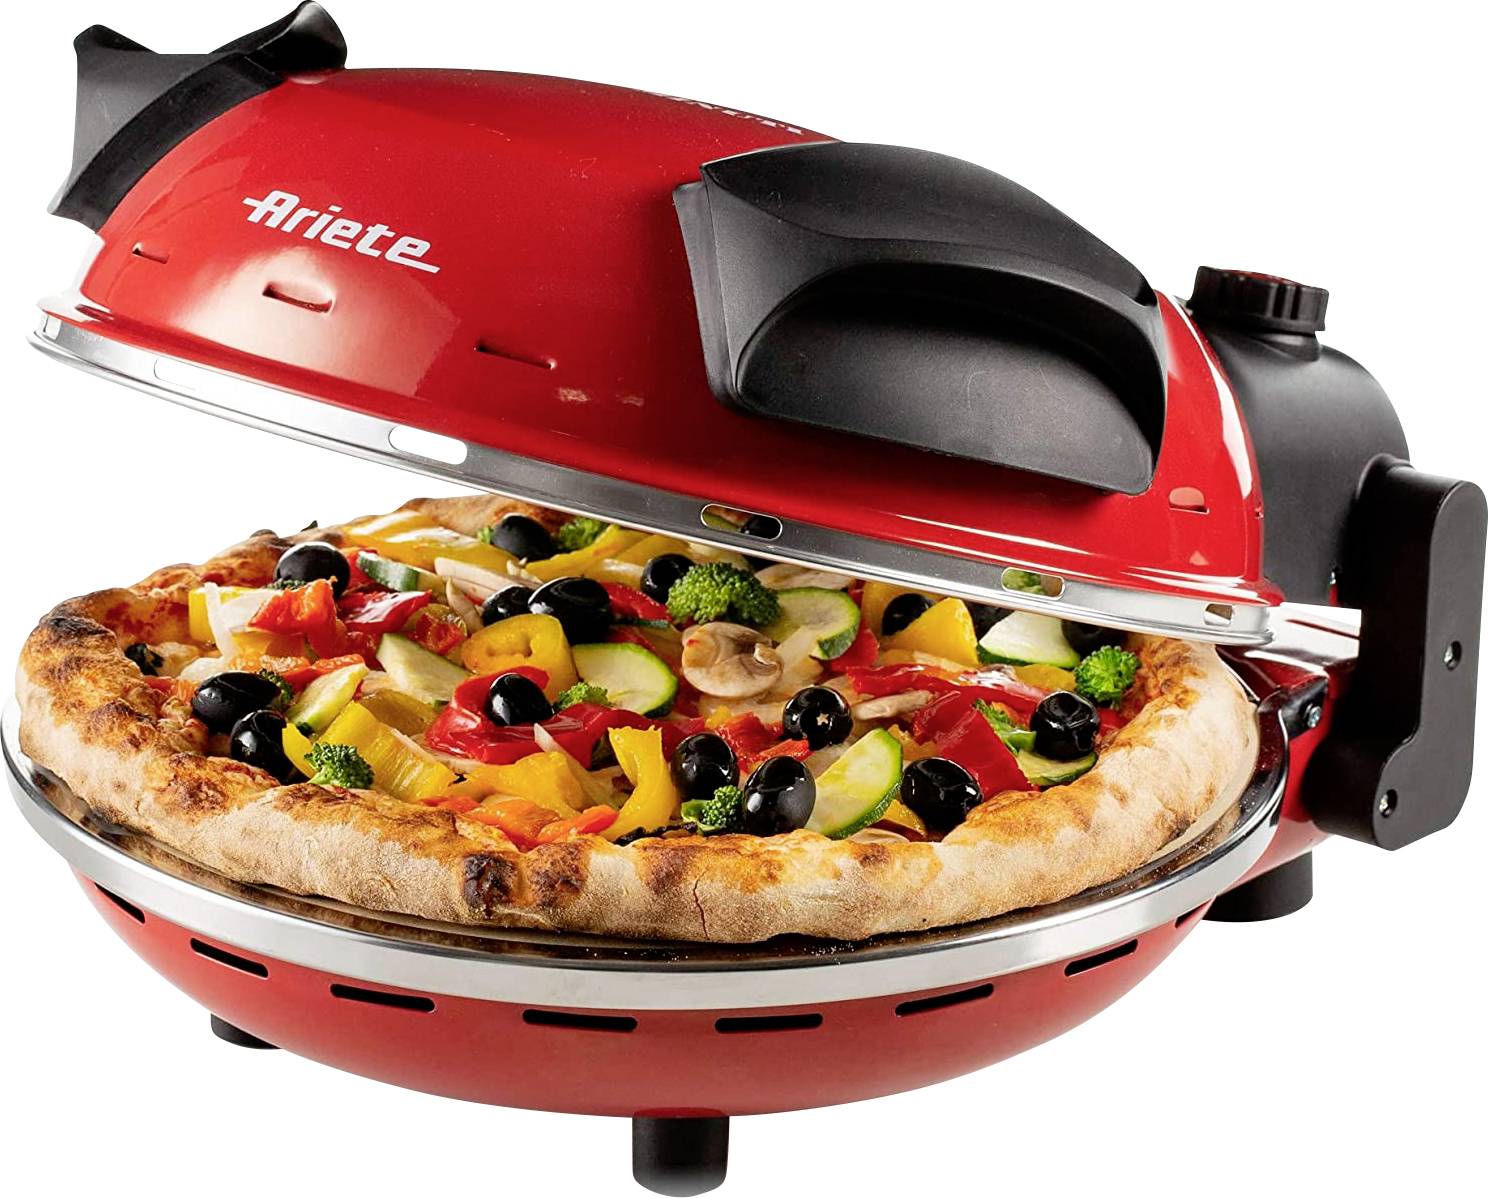 DE LONGHI Ariete Pizzaofen 909, rot 4-Minuten-Pizza, Pizzaofen mit 5 Garstufen, Feuerfeste Platte zu